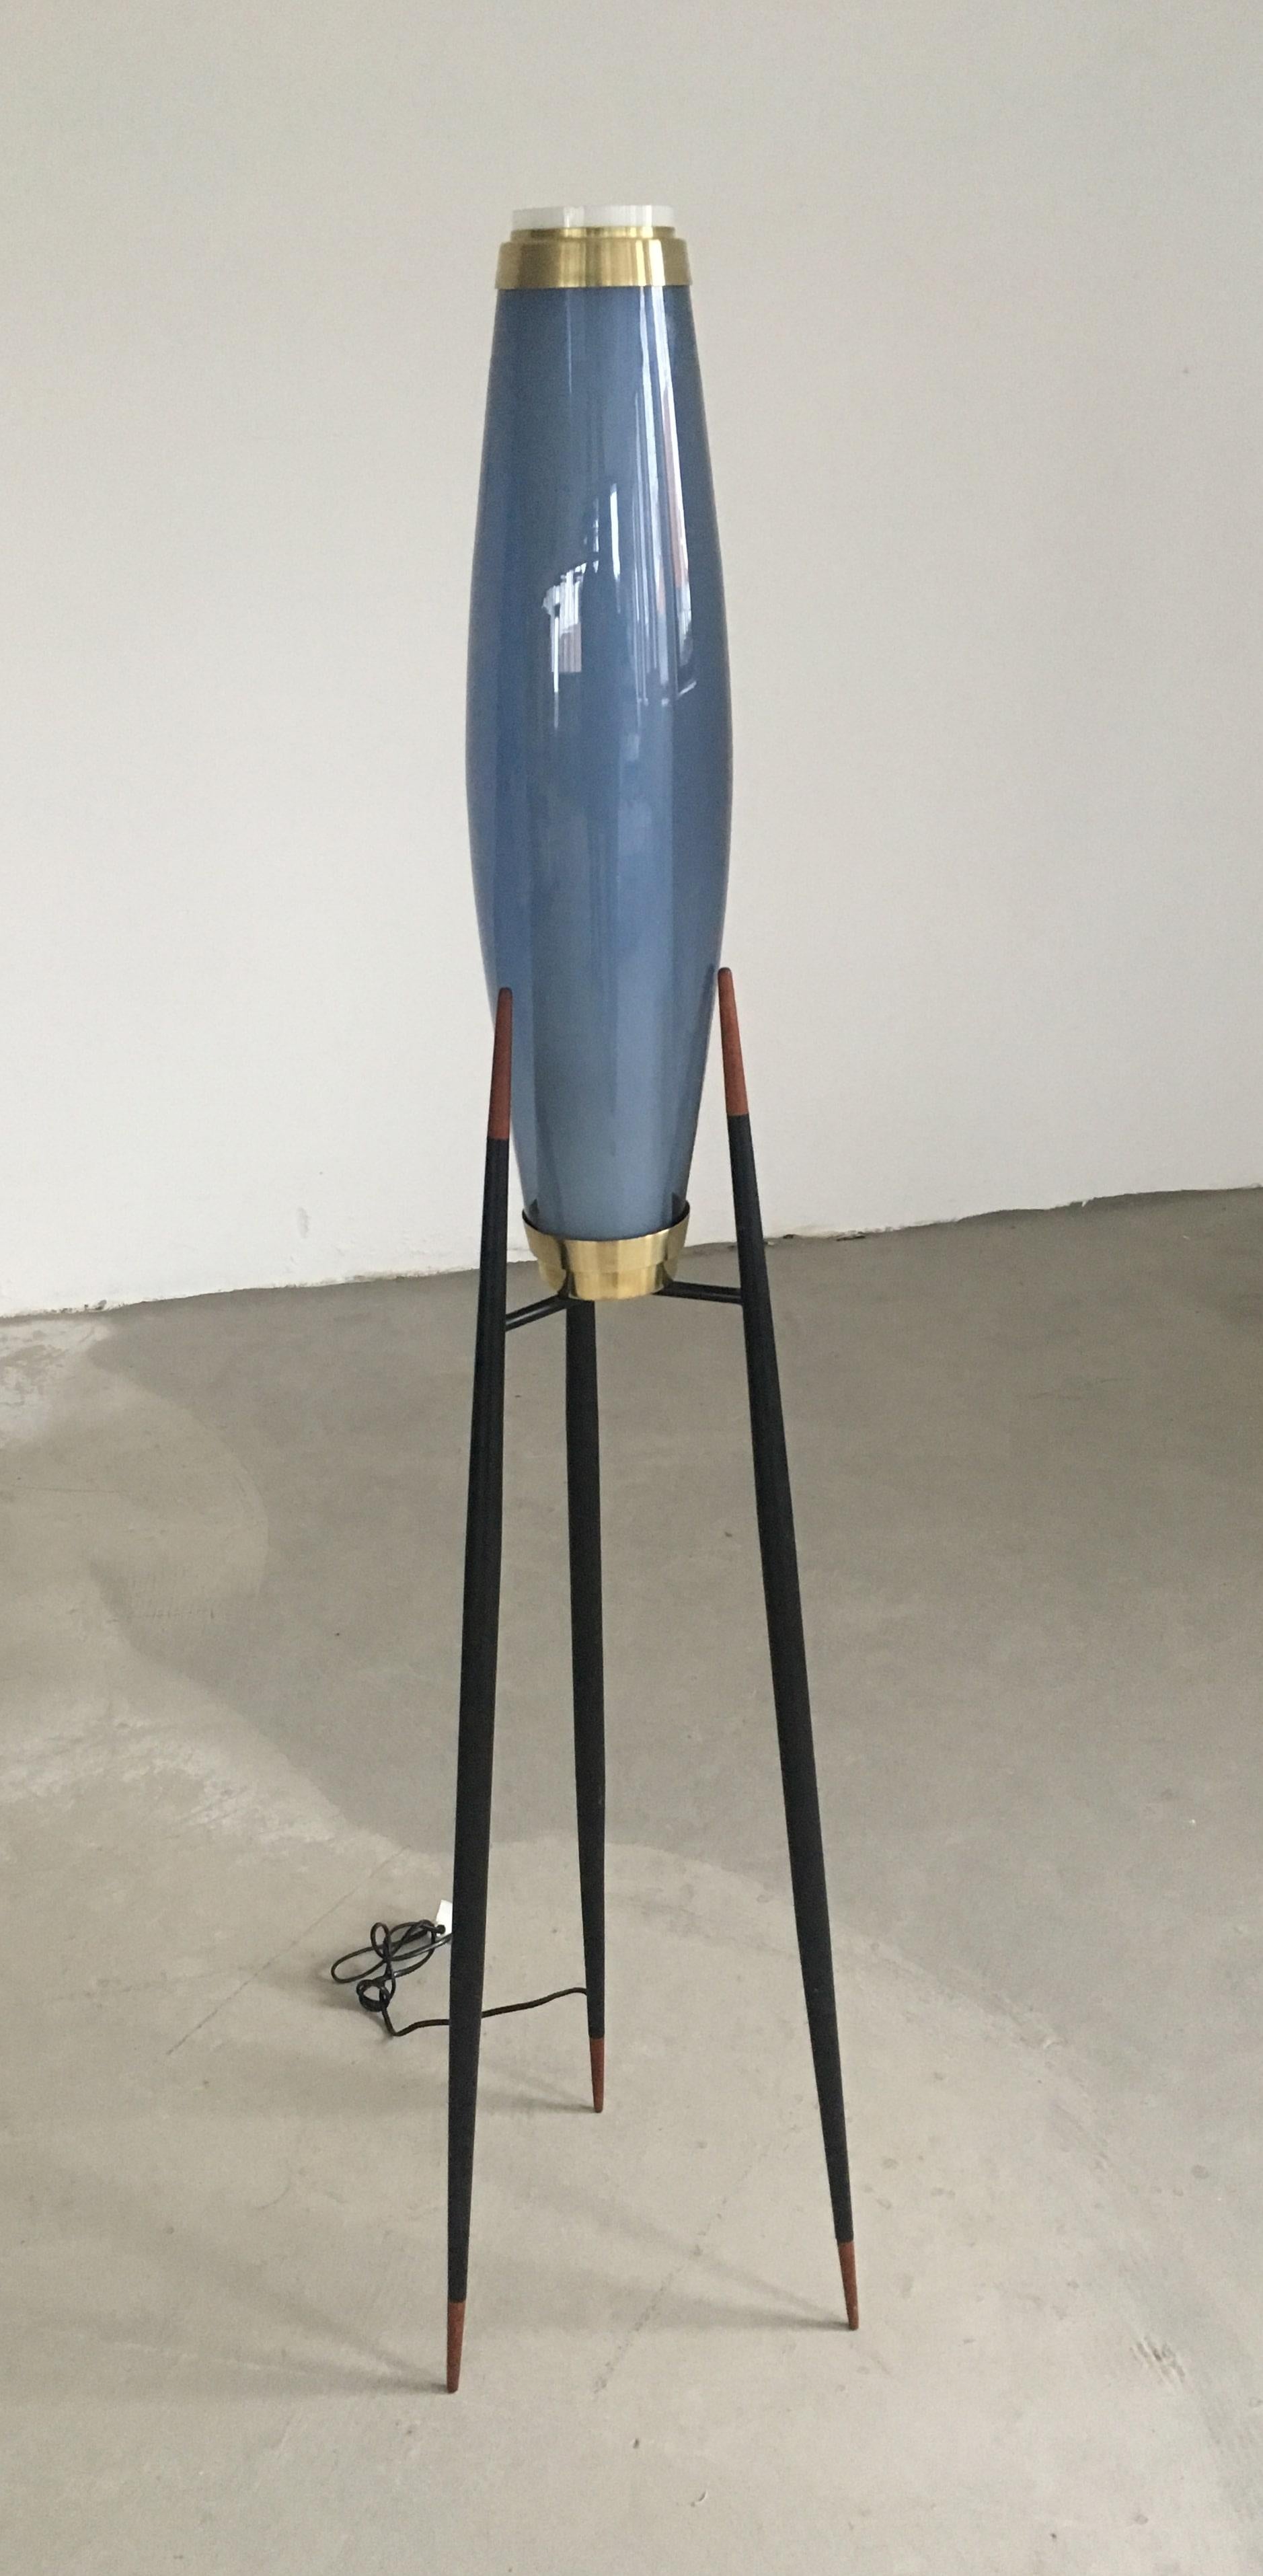 Seltener Satz von zwei vollständigen dänischen Dreibein-Stehlampen, entworfen von Svend Aage Holm Sørensen, um 1955.

Die Stehlampen haben eine schwarz emaillierte Metall- und Messinghalterung auf drei Füßen, die mit spitzen Teakholzstücken